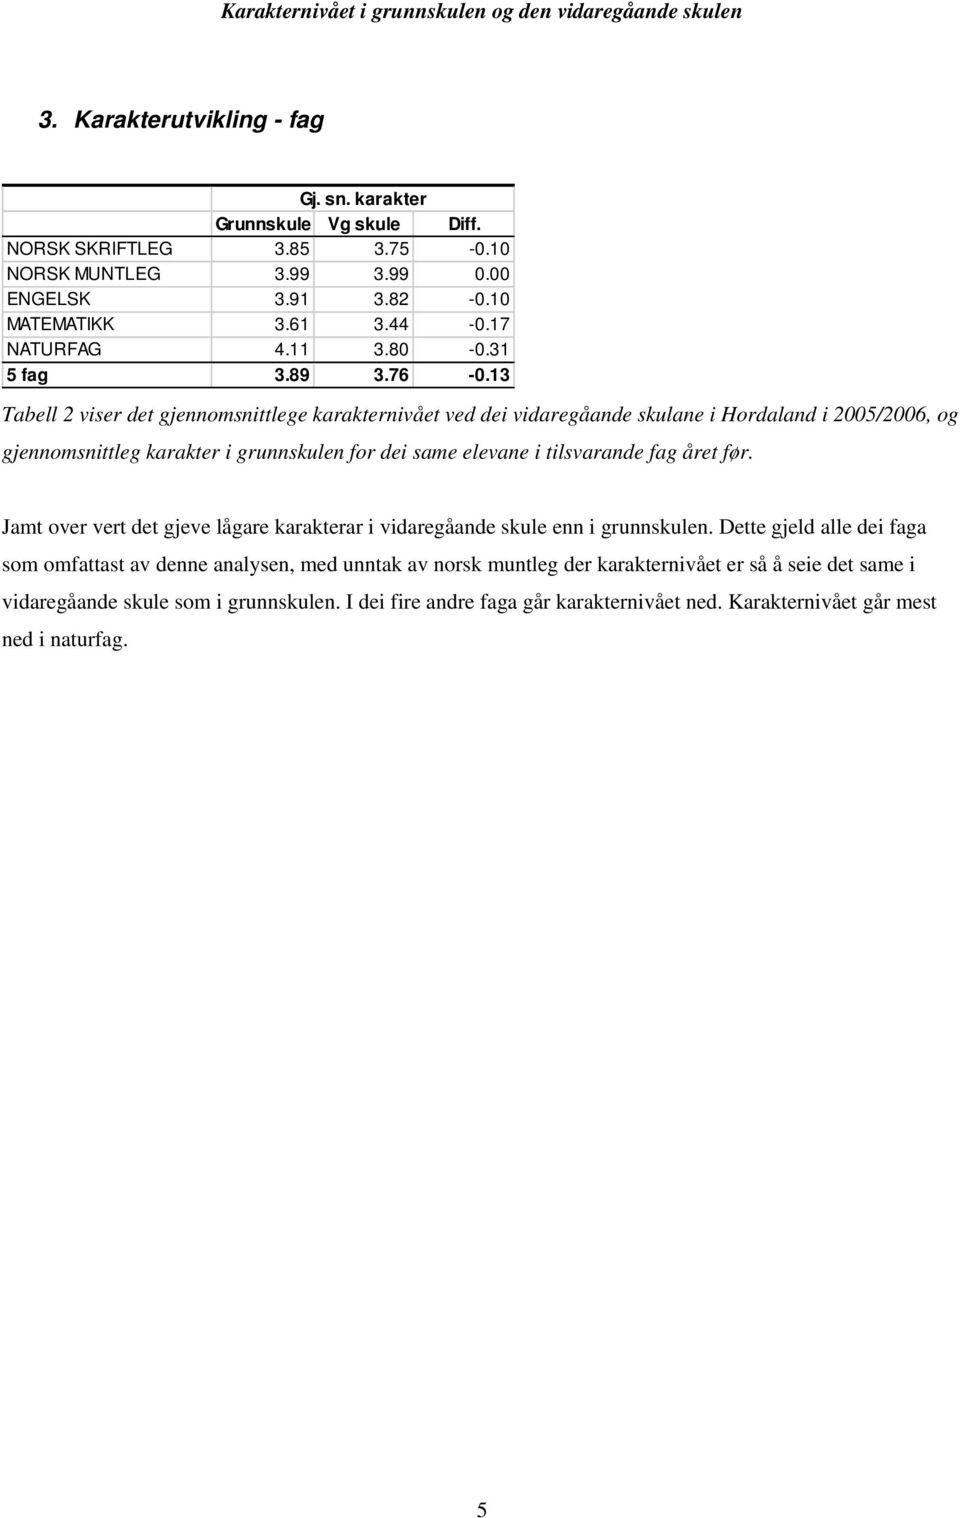 13 Tabell 2 viser det gjennomsnittlege karakternivået ved dei vidaregåande skulane i Hordaland i 2005/2006, og gjennomsnittleg karakter i grunnskulen for dei same elevane i tilsvarande fag